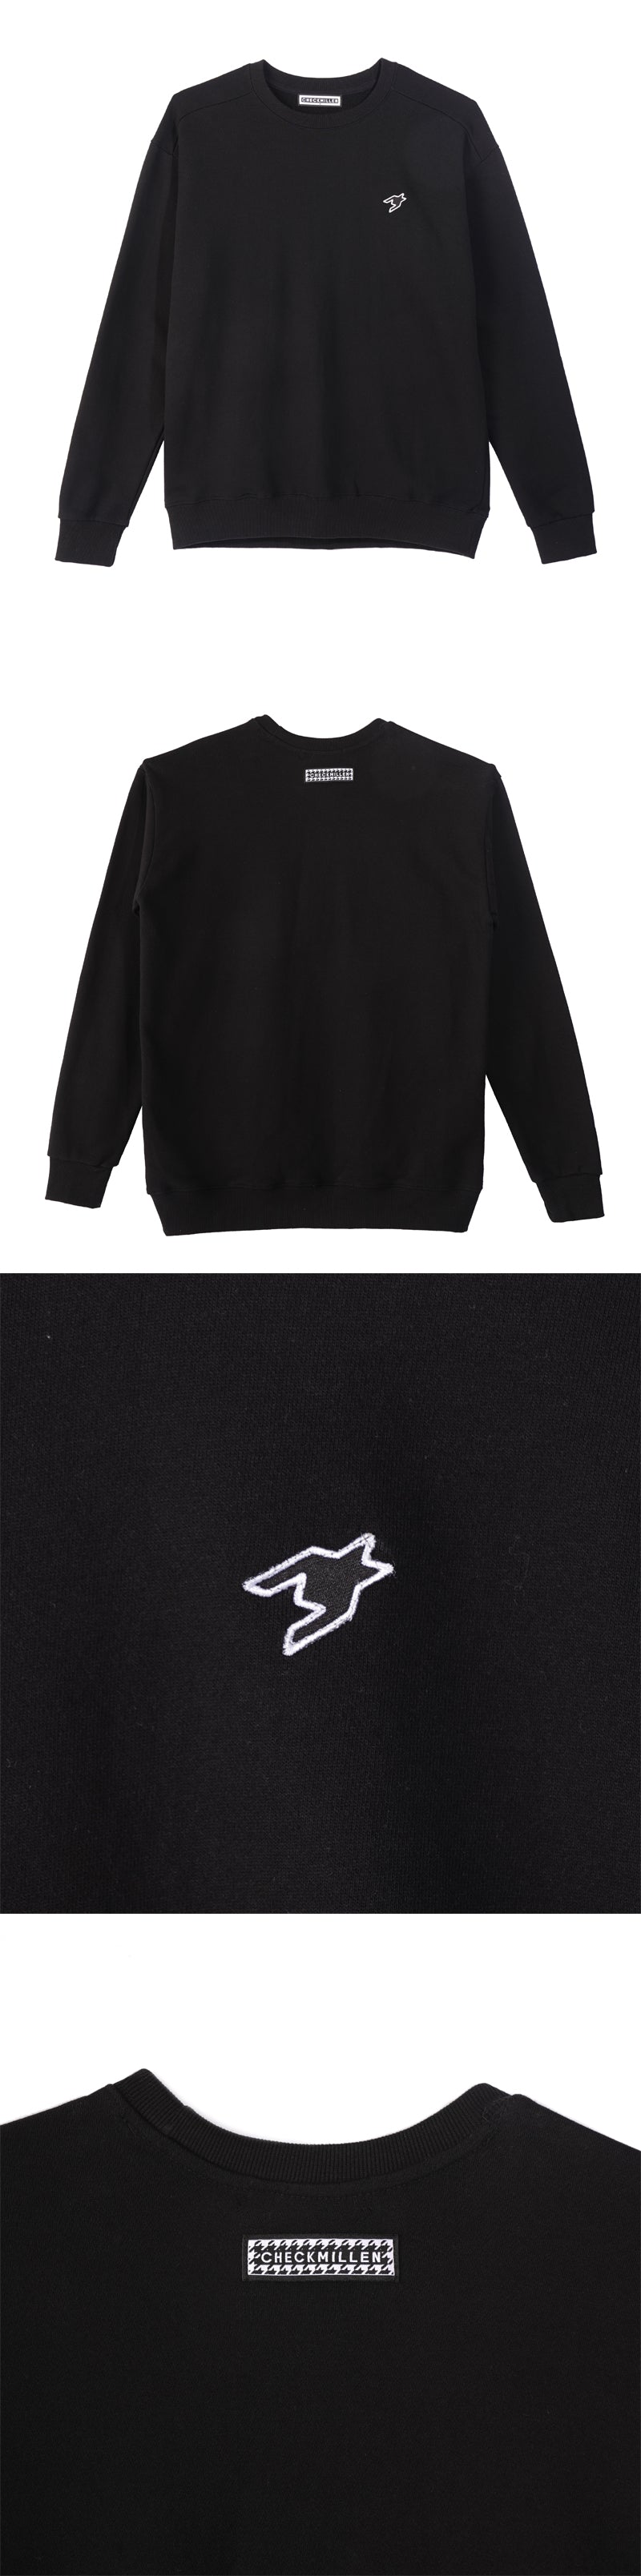 ロゴスウェットシャツ / CHECKMILLEN LOGO SWEATSHIRT (BLACK)